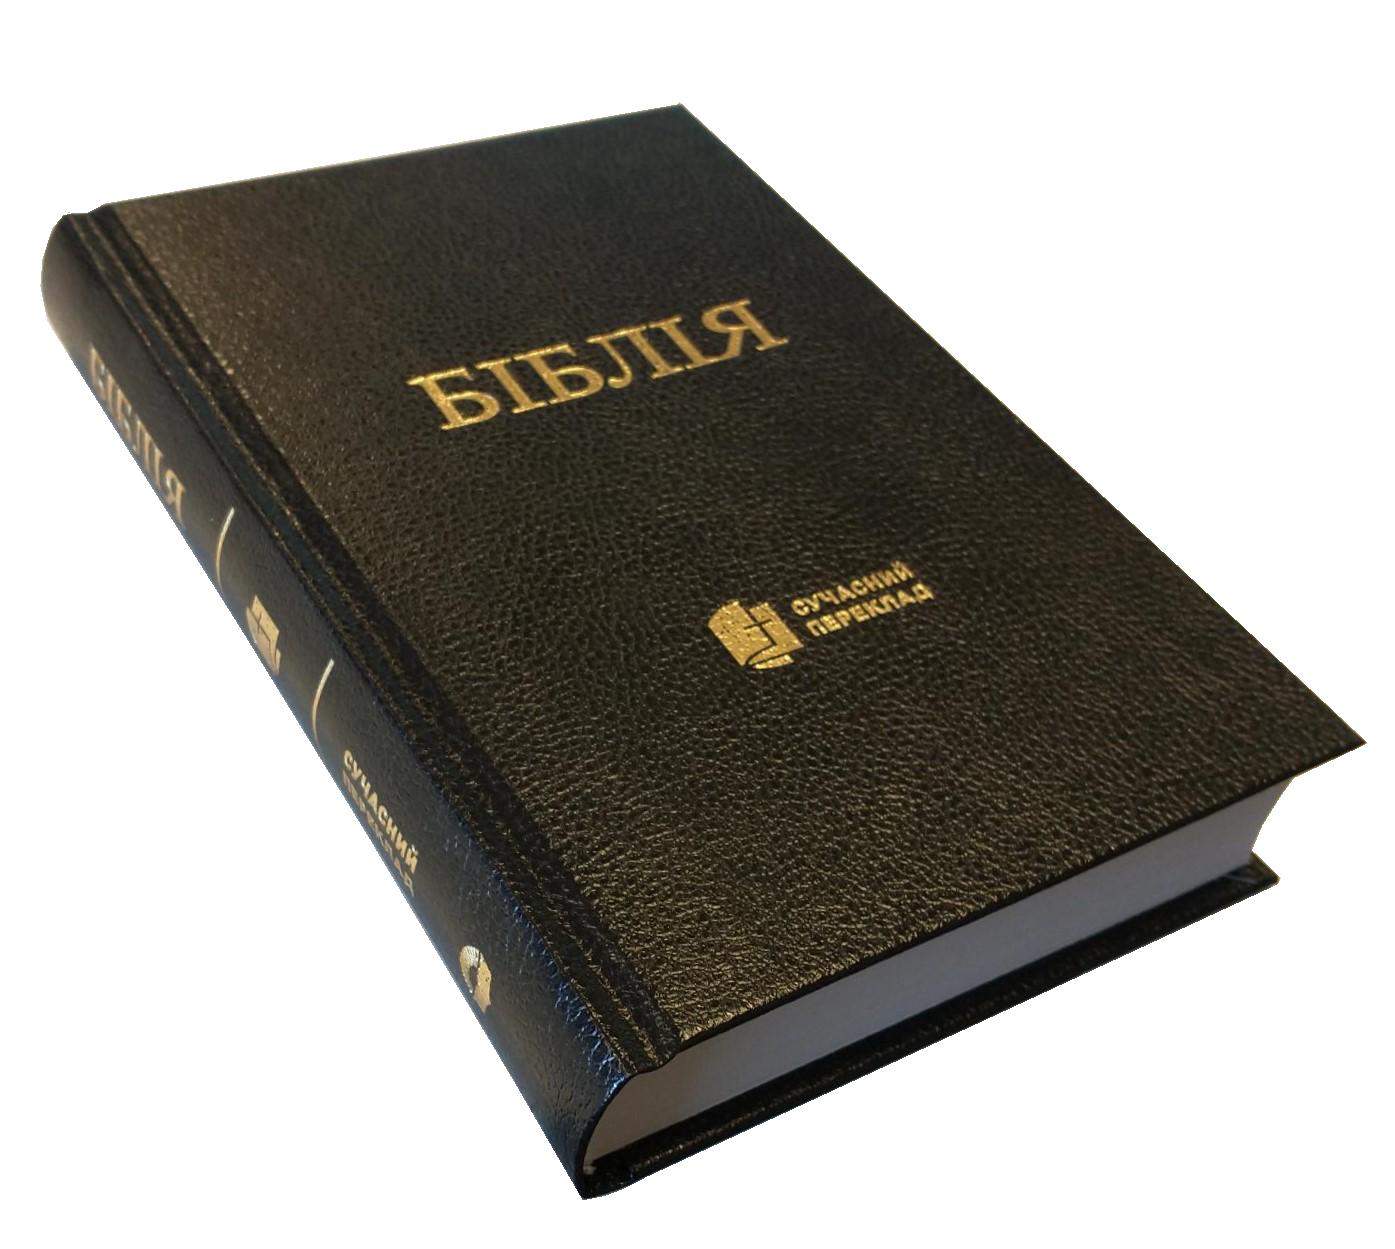 UKRAINIEN BIBLE - VERSION TRADUCTION MODERNE - RIGIDE SKIVERTEX